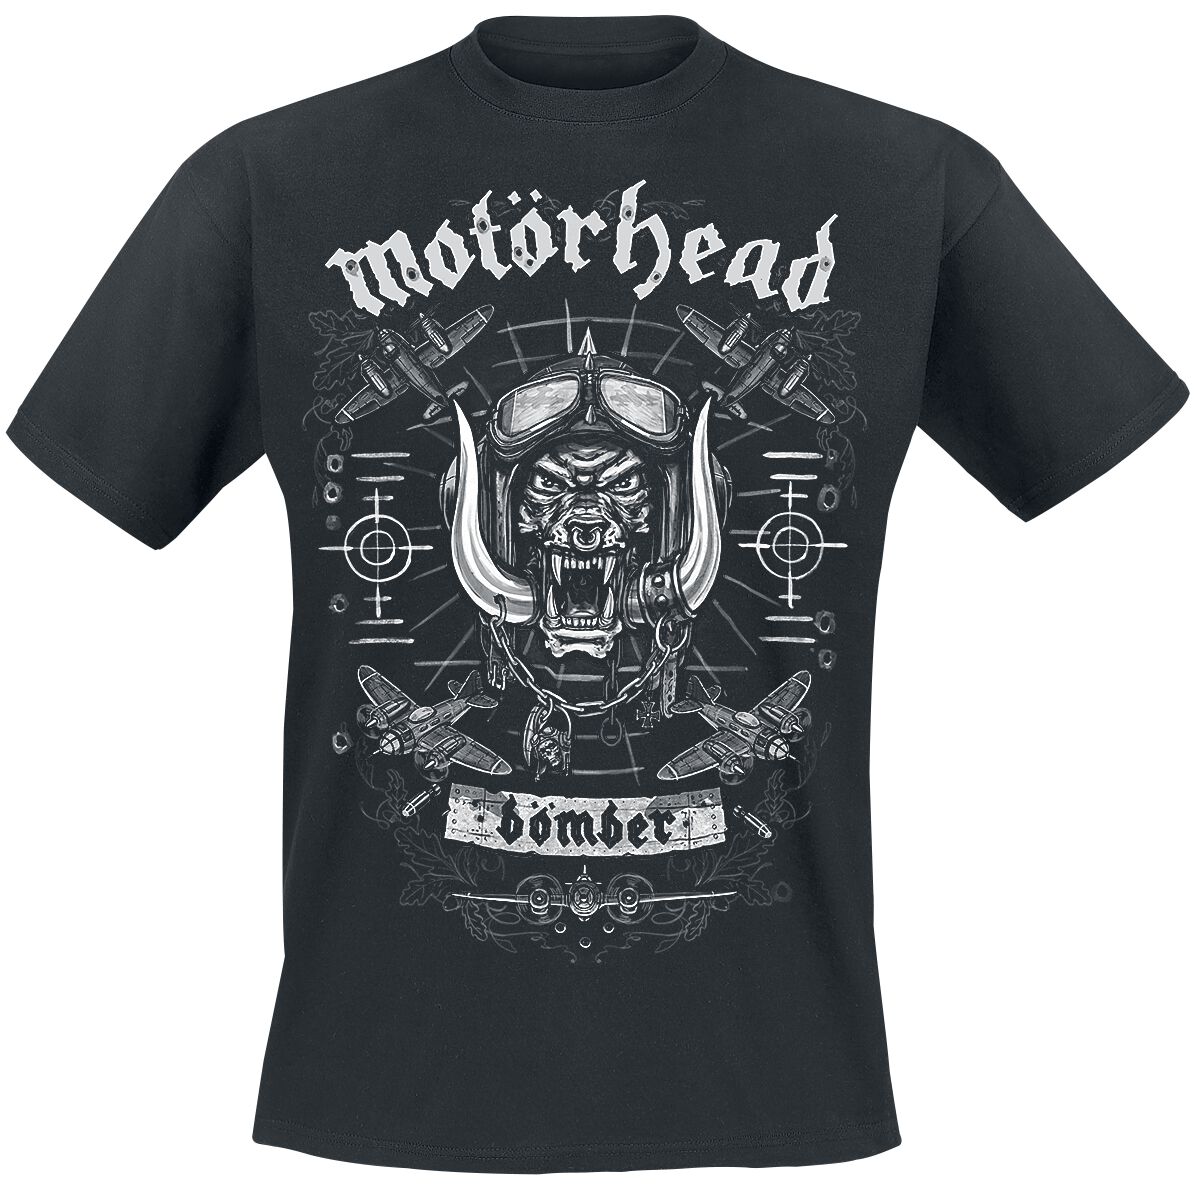 Motörhead T-Shirt - Bomber Planes - S bis XXL - für Männer - Größe XL - schwarz  - Lizenziertes Merchandise!